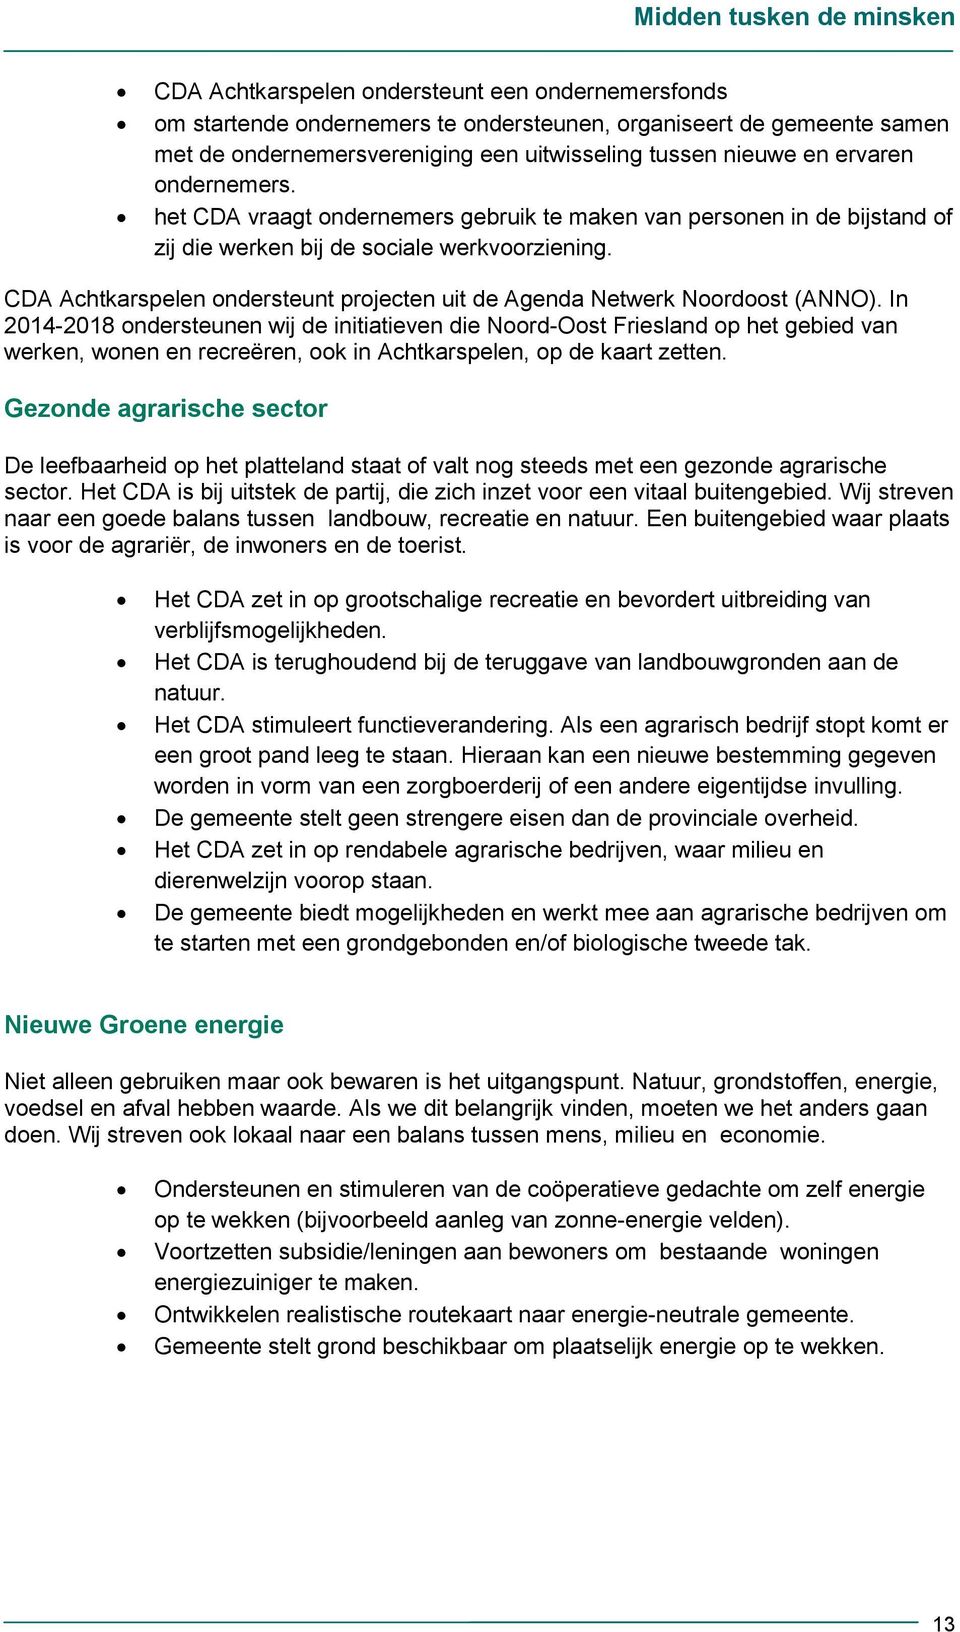 CDA Achtkarspelen ondersteunt projecten uit de Agenda Netwerk Noordoost (ANNO).